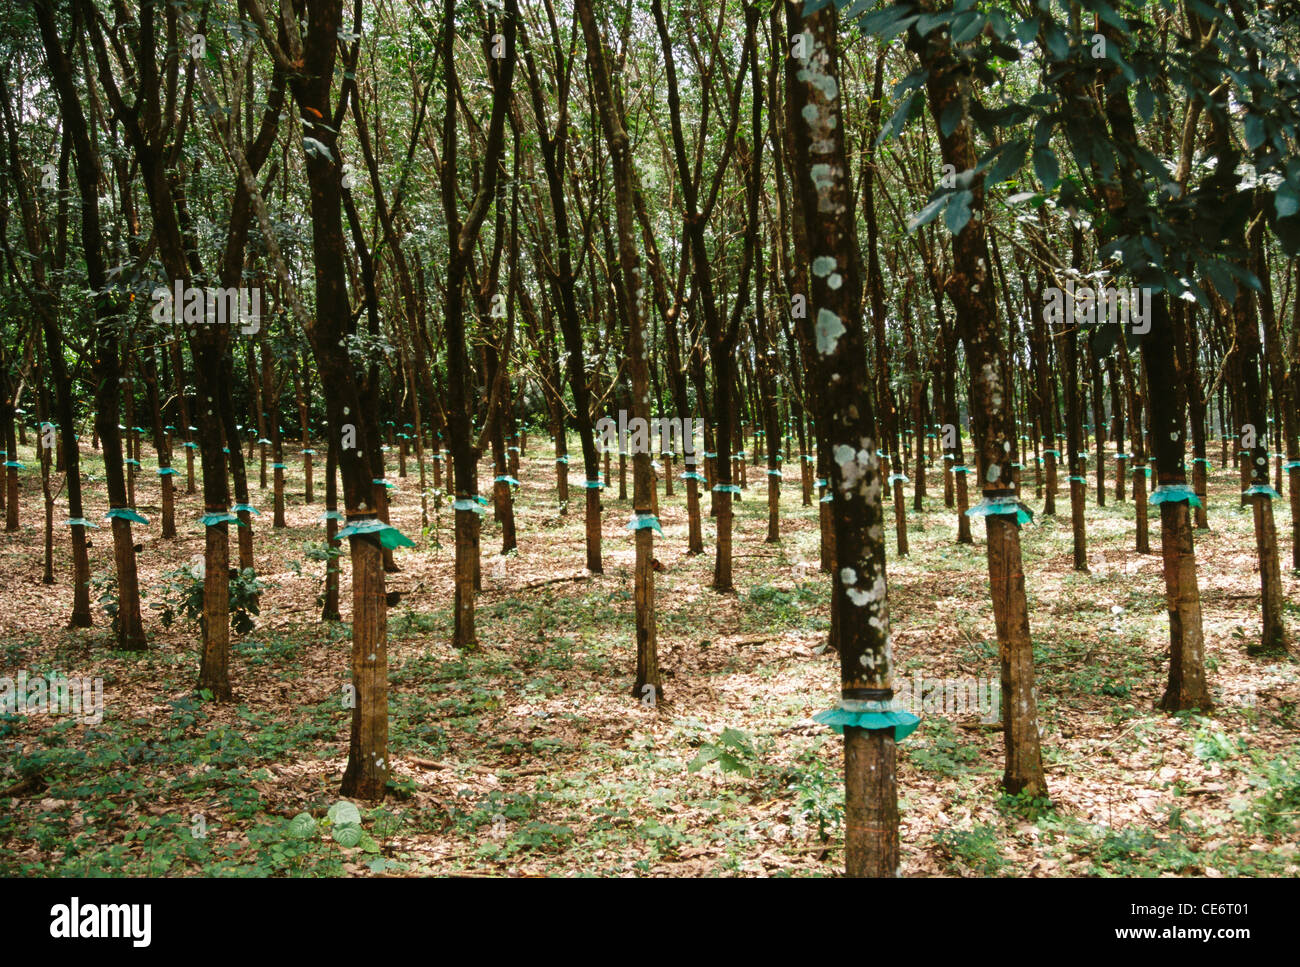 Rubber tree plantation ; kerala ; india ; asia Stock Photo